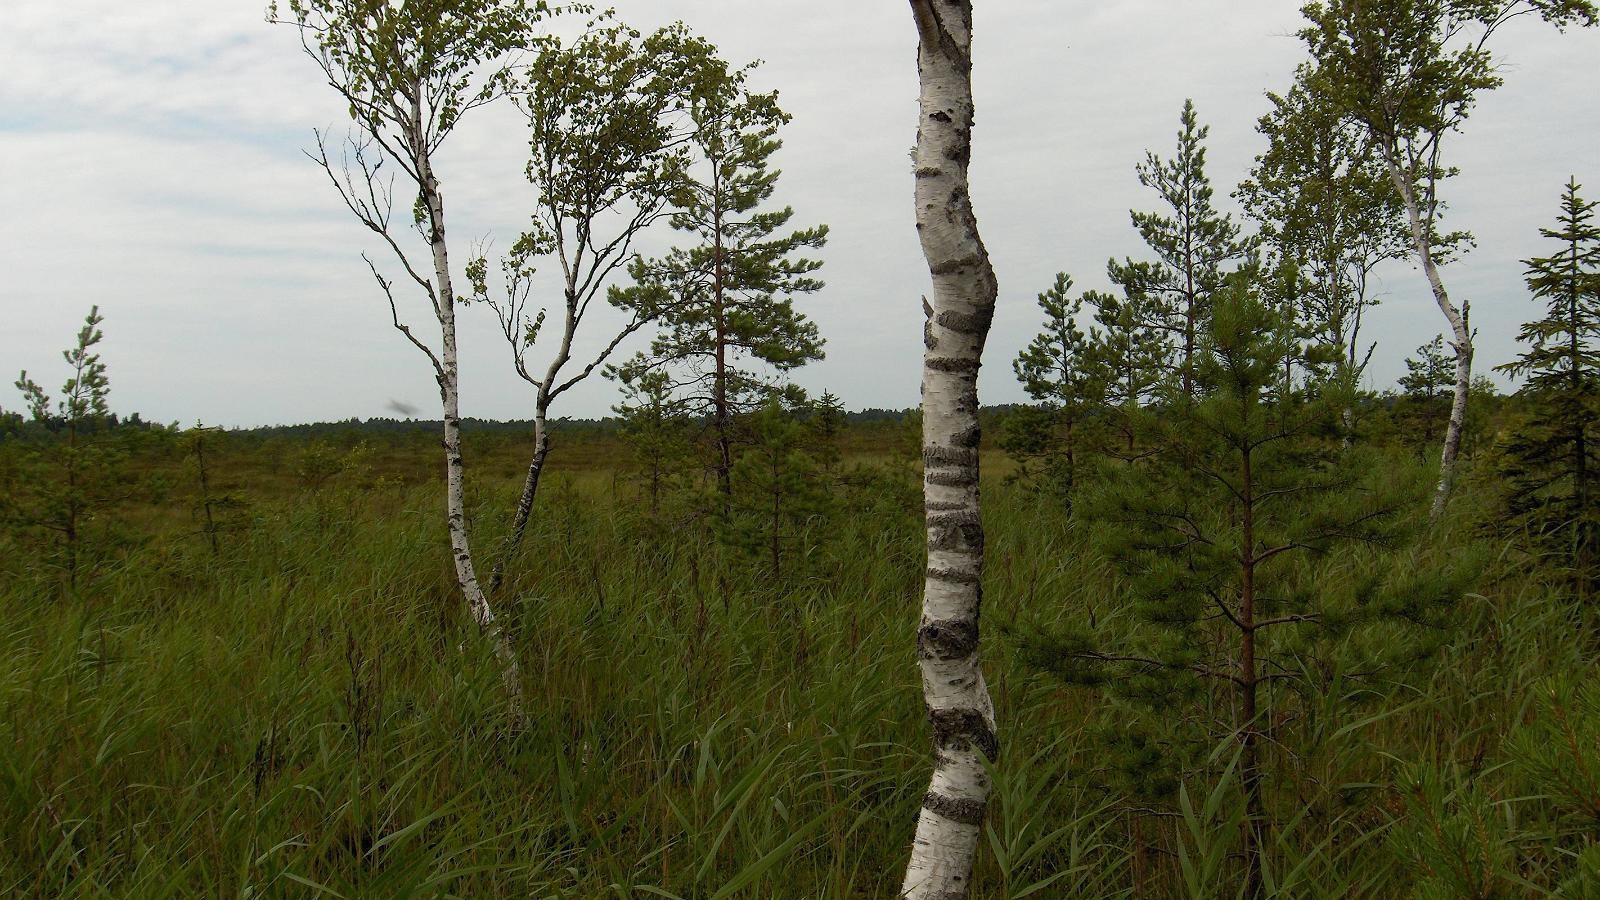 Swamp birches by Virussaare